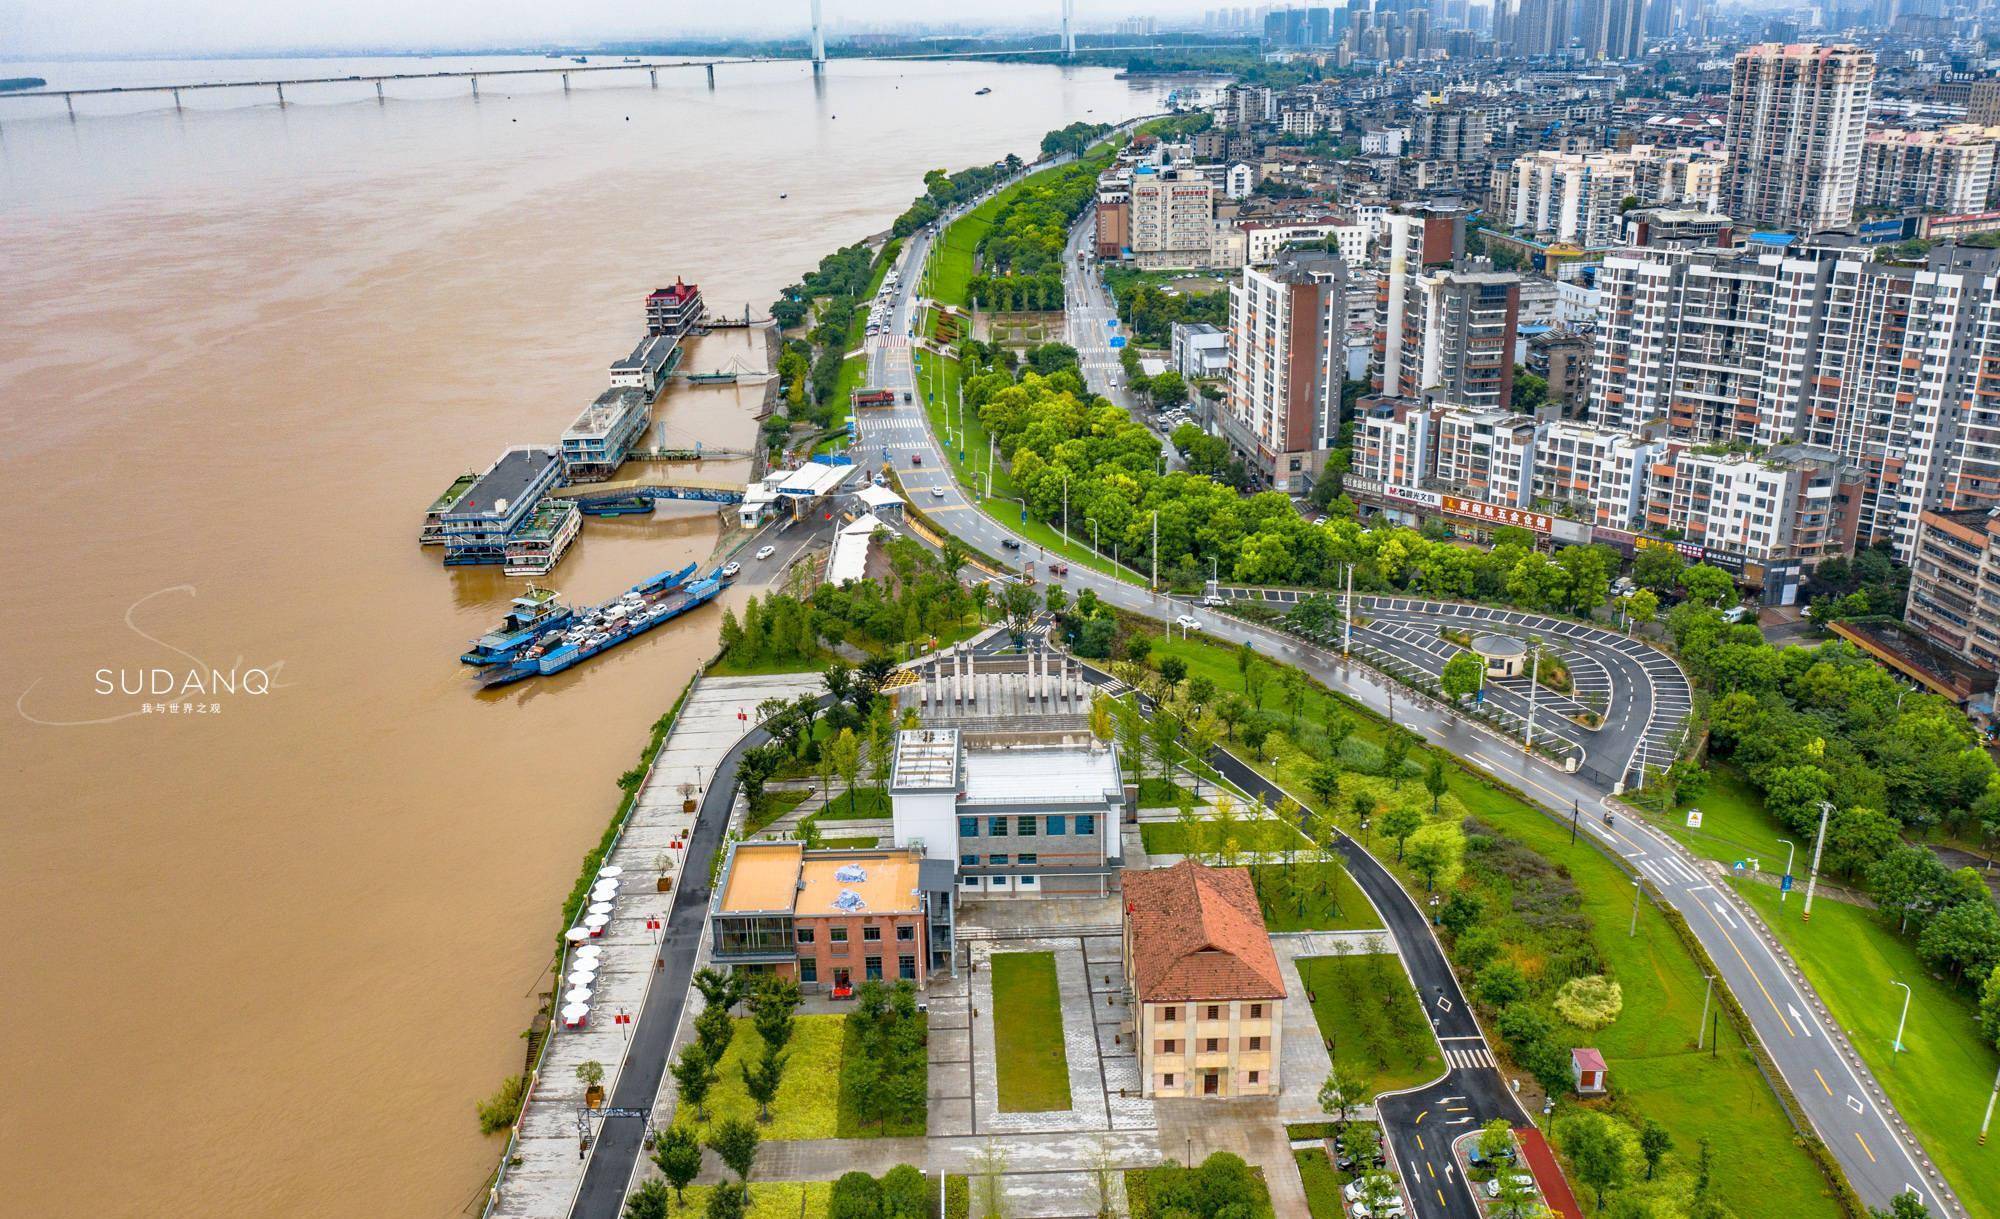 除了武汉和重庆,湖北的这座码头城市也值得一看:百年沙市洋码头